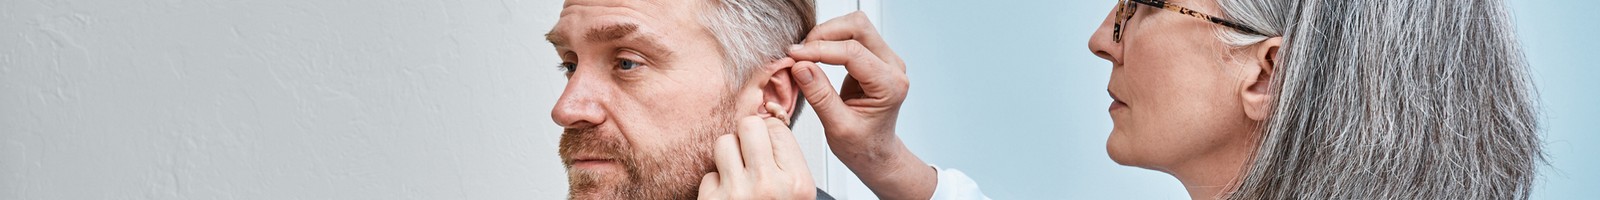 Les bienfaits insoupçonnés des prothèses auditives sur la durée de vie